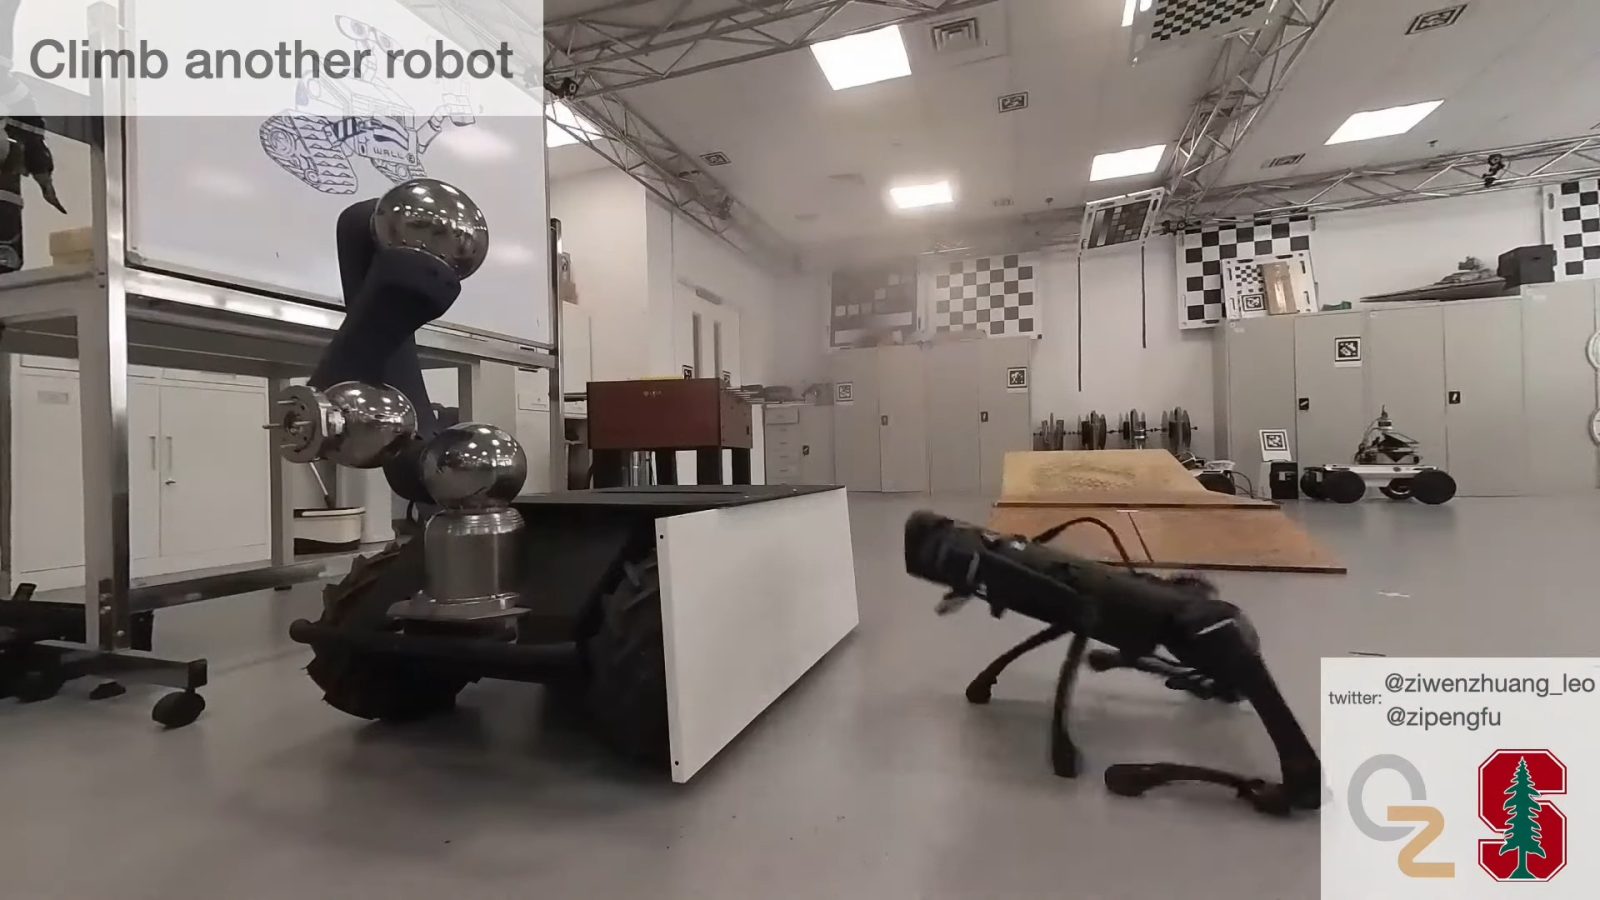 Robotyczny pies (źródło: YouTube/Zipeng Fu)